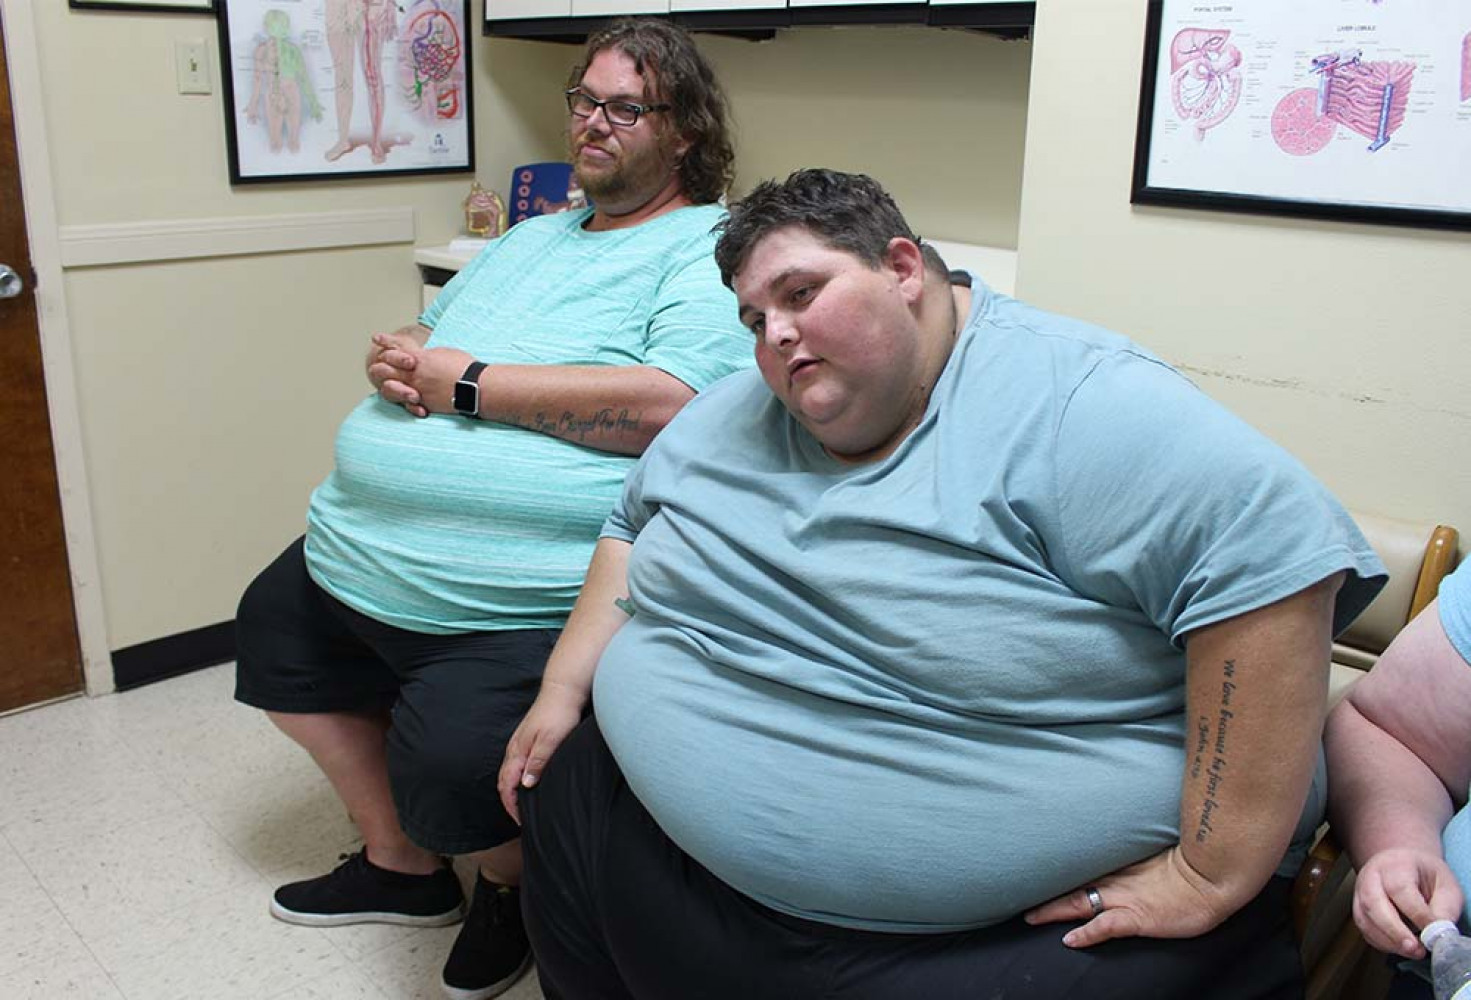 Dr. Now’ı bile şaşırtan değişim: Toplam 405 kilo verdiler!